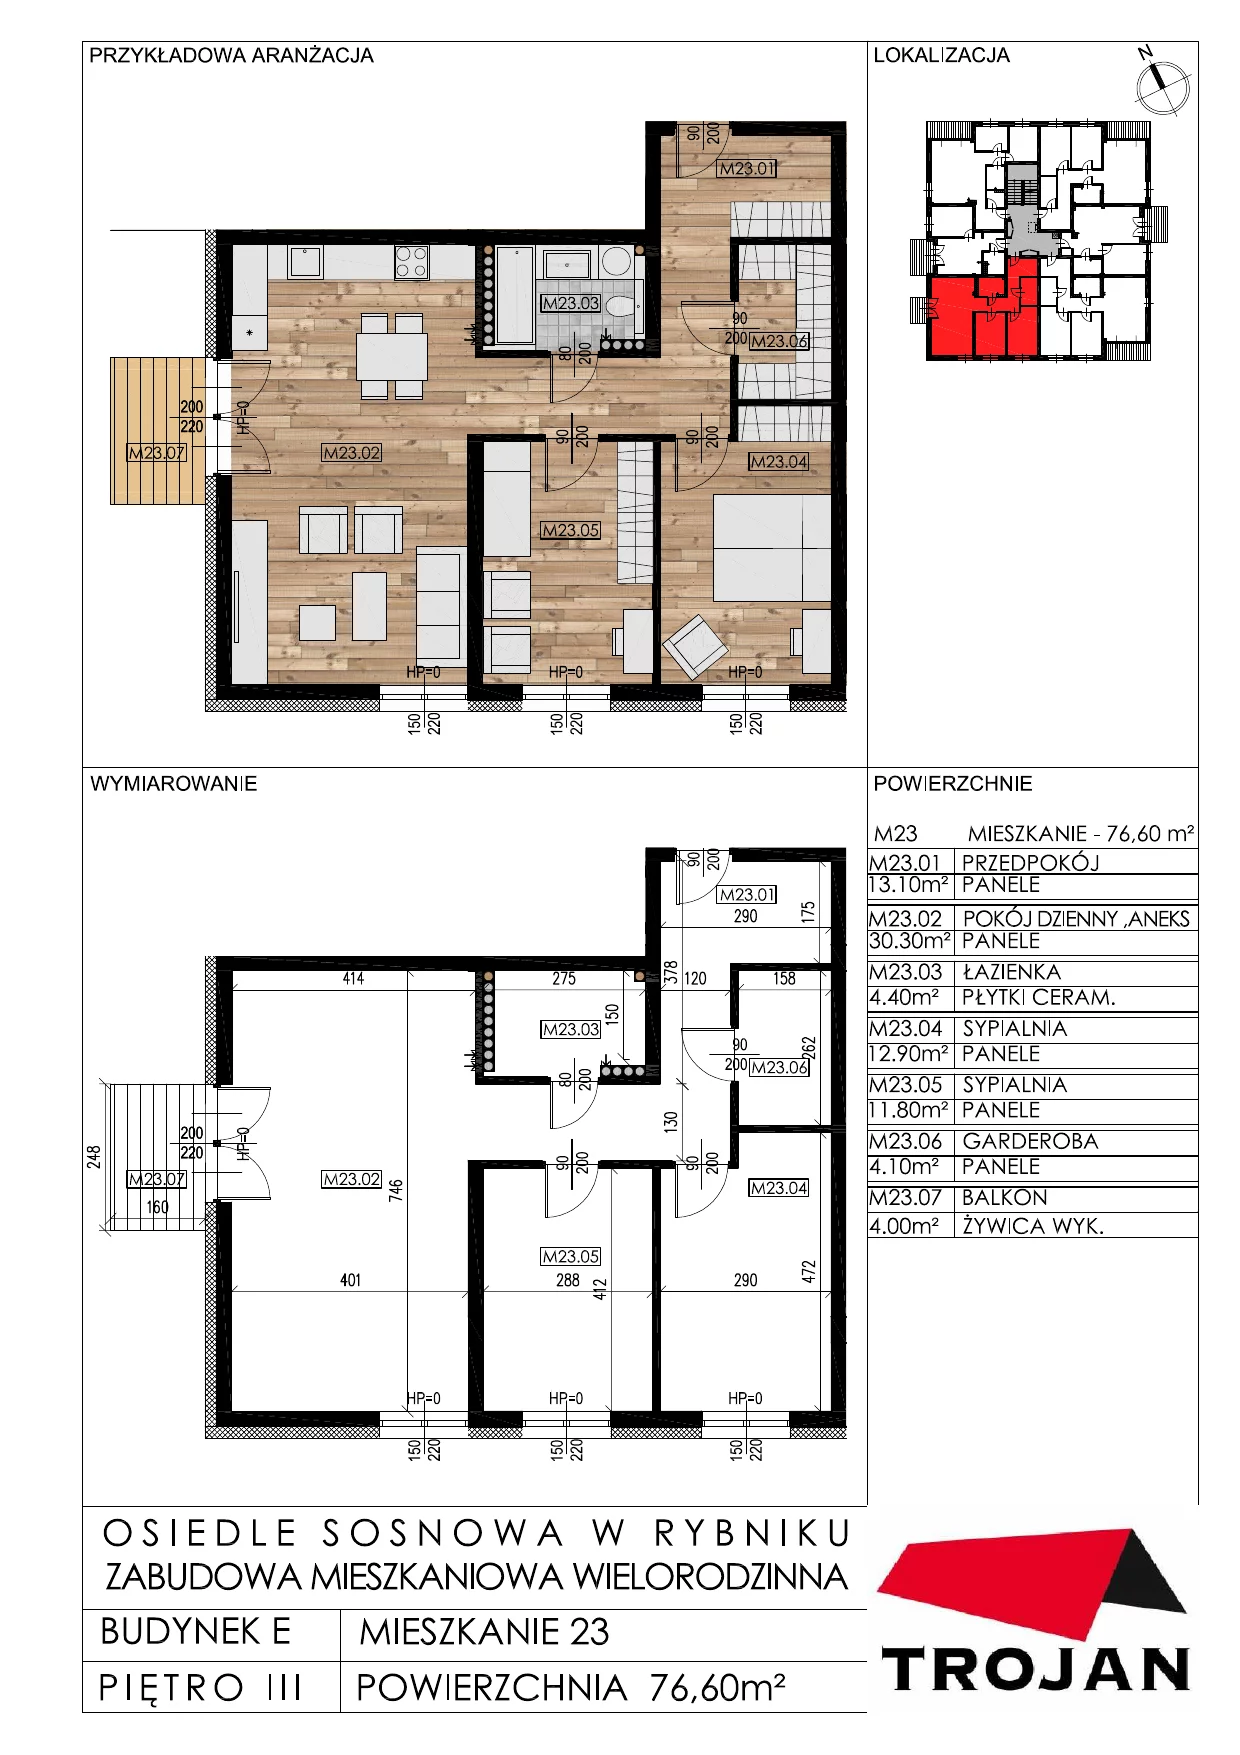 Mieszkanie 76,60 m², piętro 3, oferta nr E23, Osiedle Sosnowa, Rybnik, Paruszowiec-Piaski, ul. Sosnowa 20